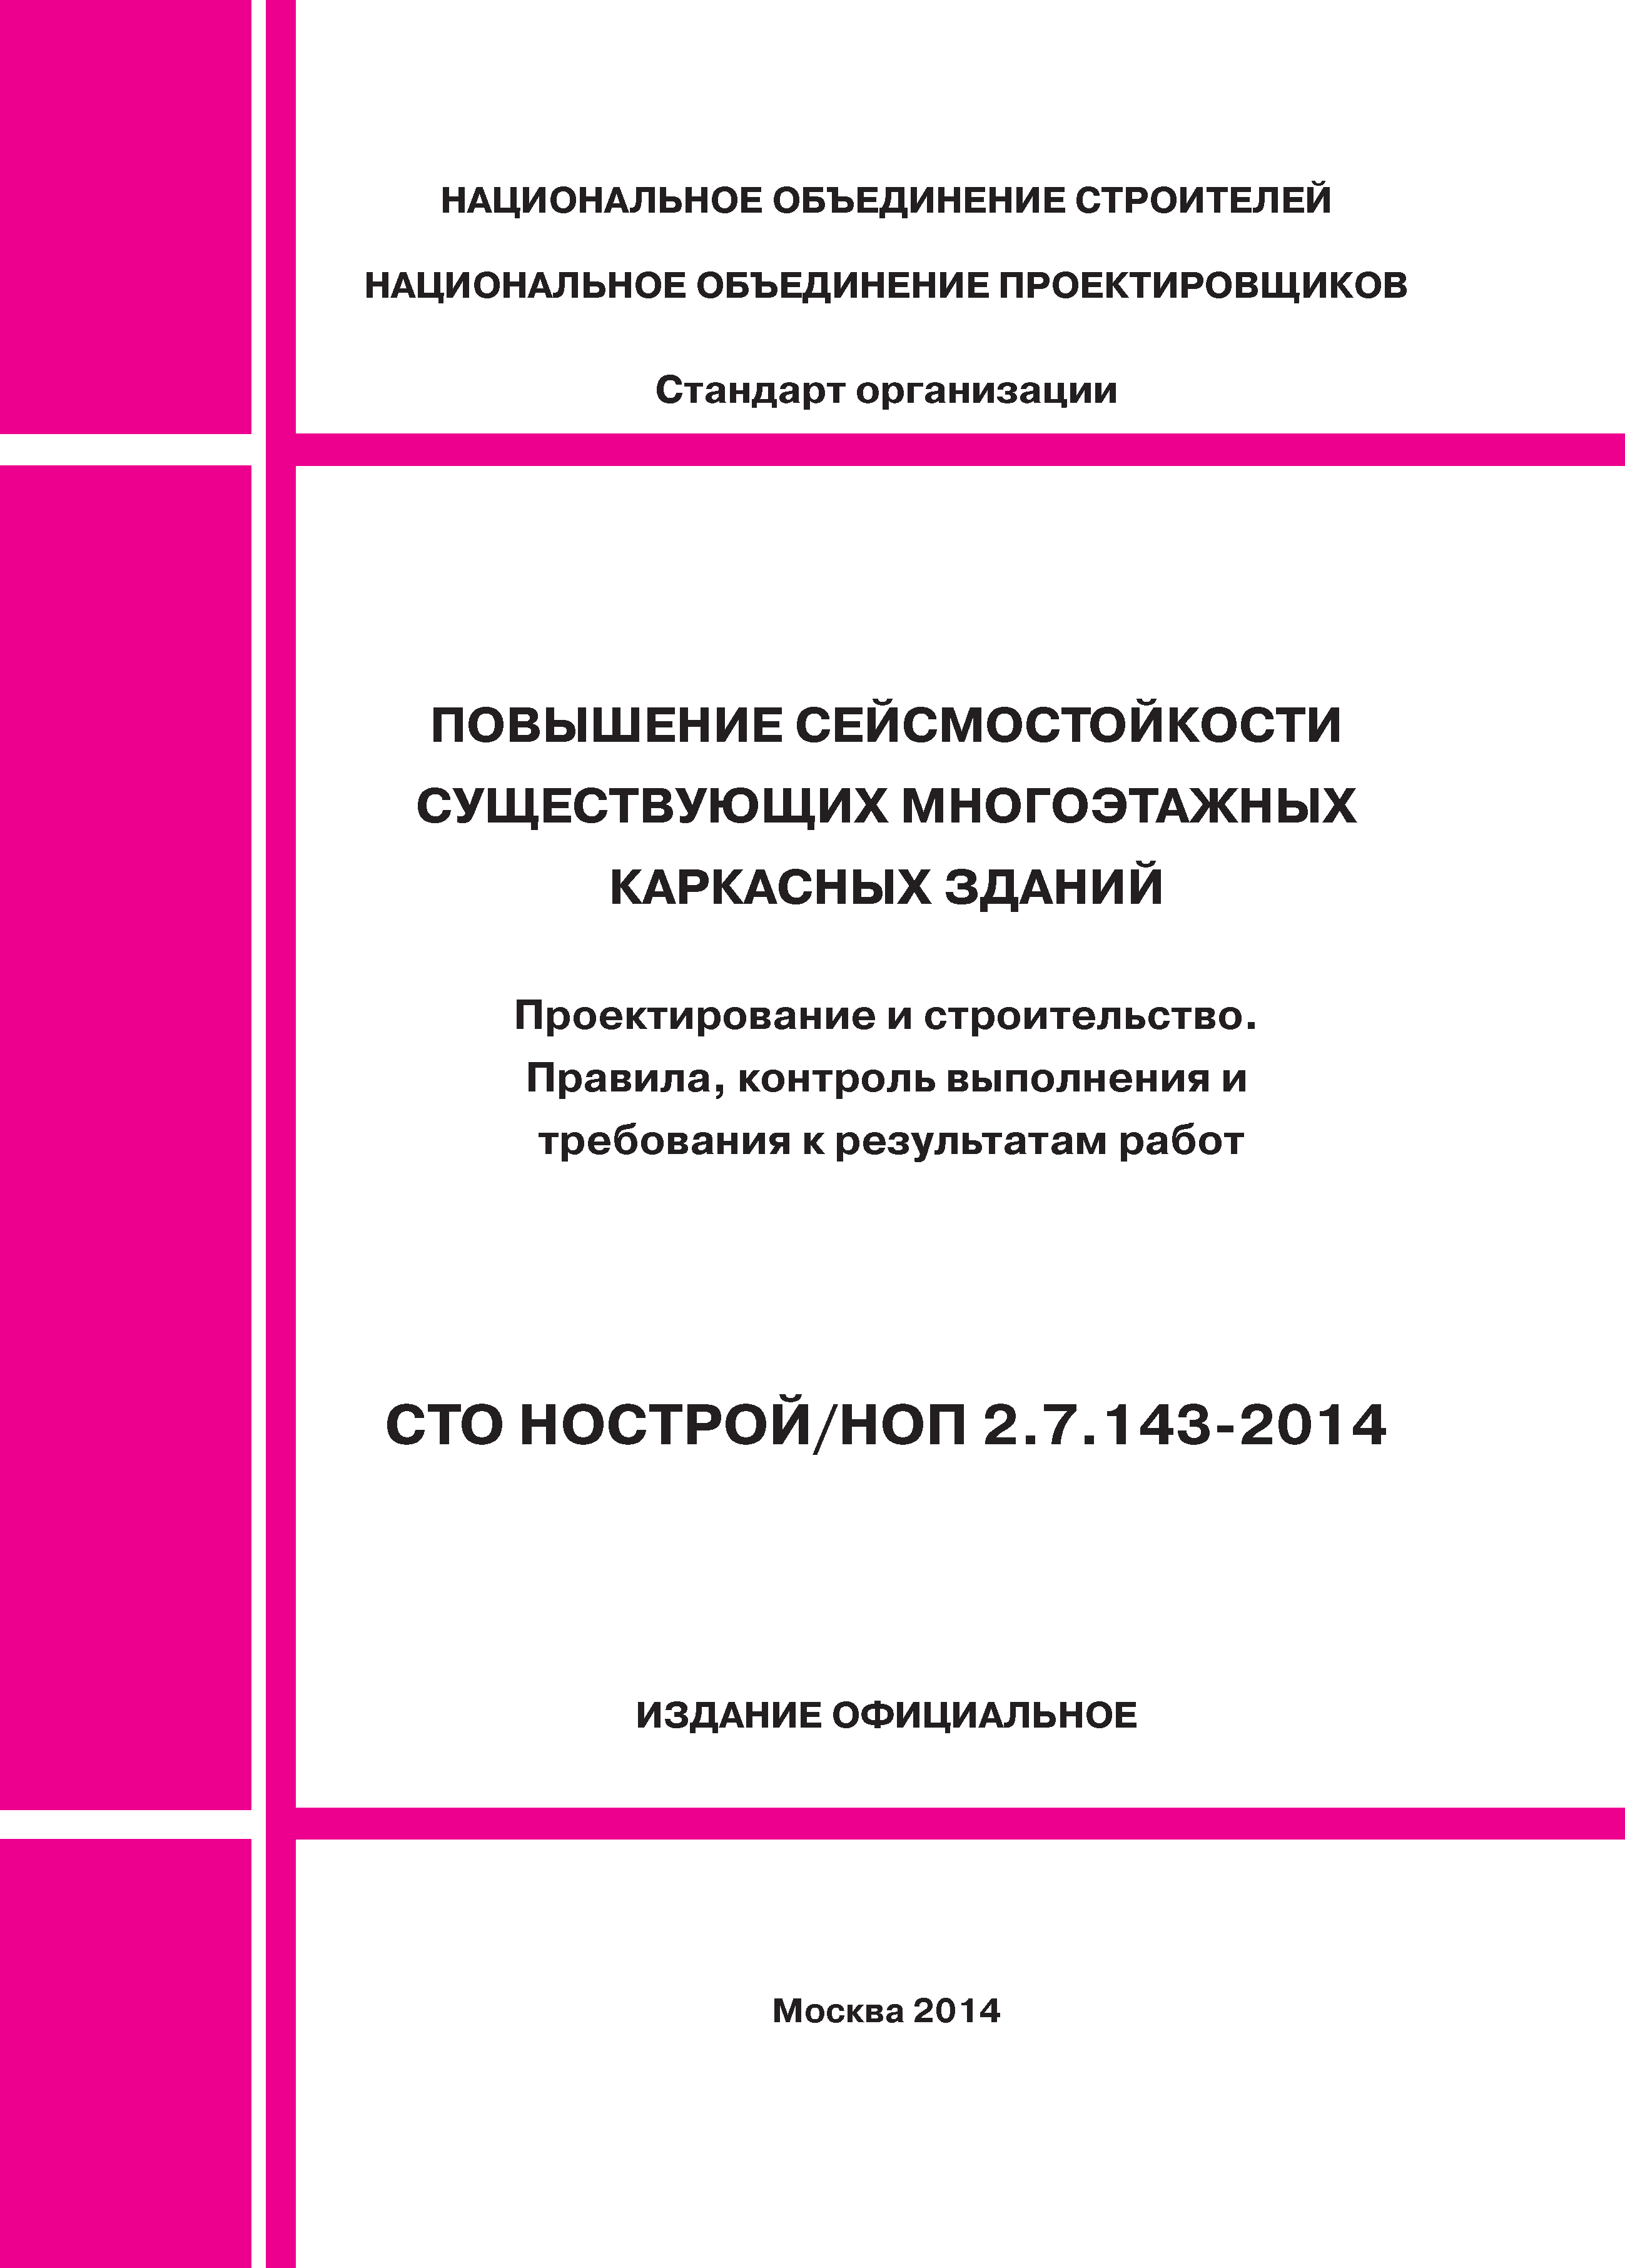 СТО НОСТРОЙ/НОП 2.7.143-2014